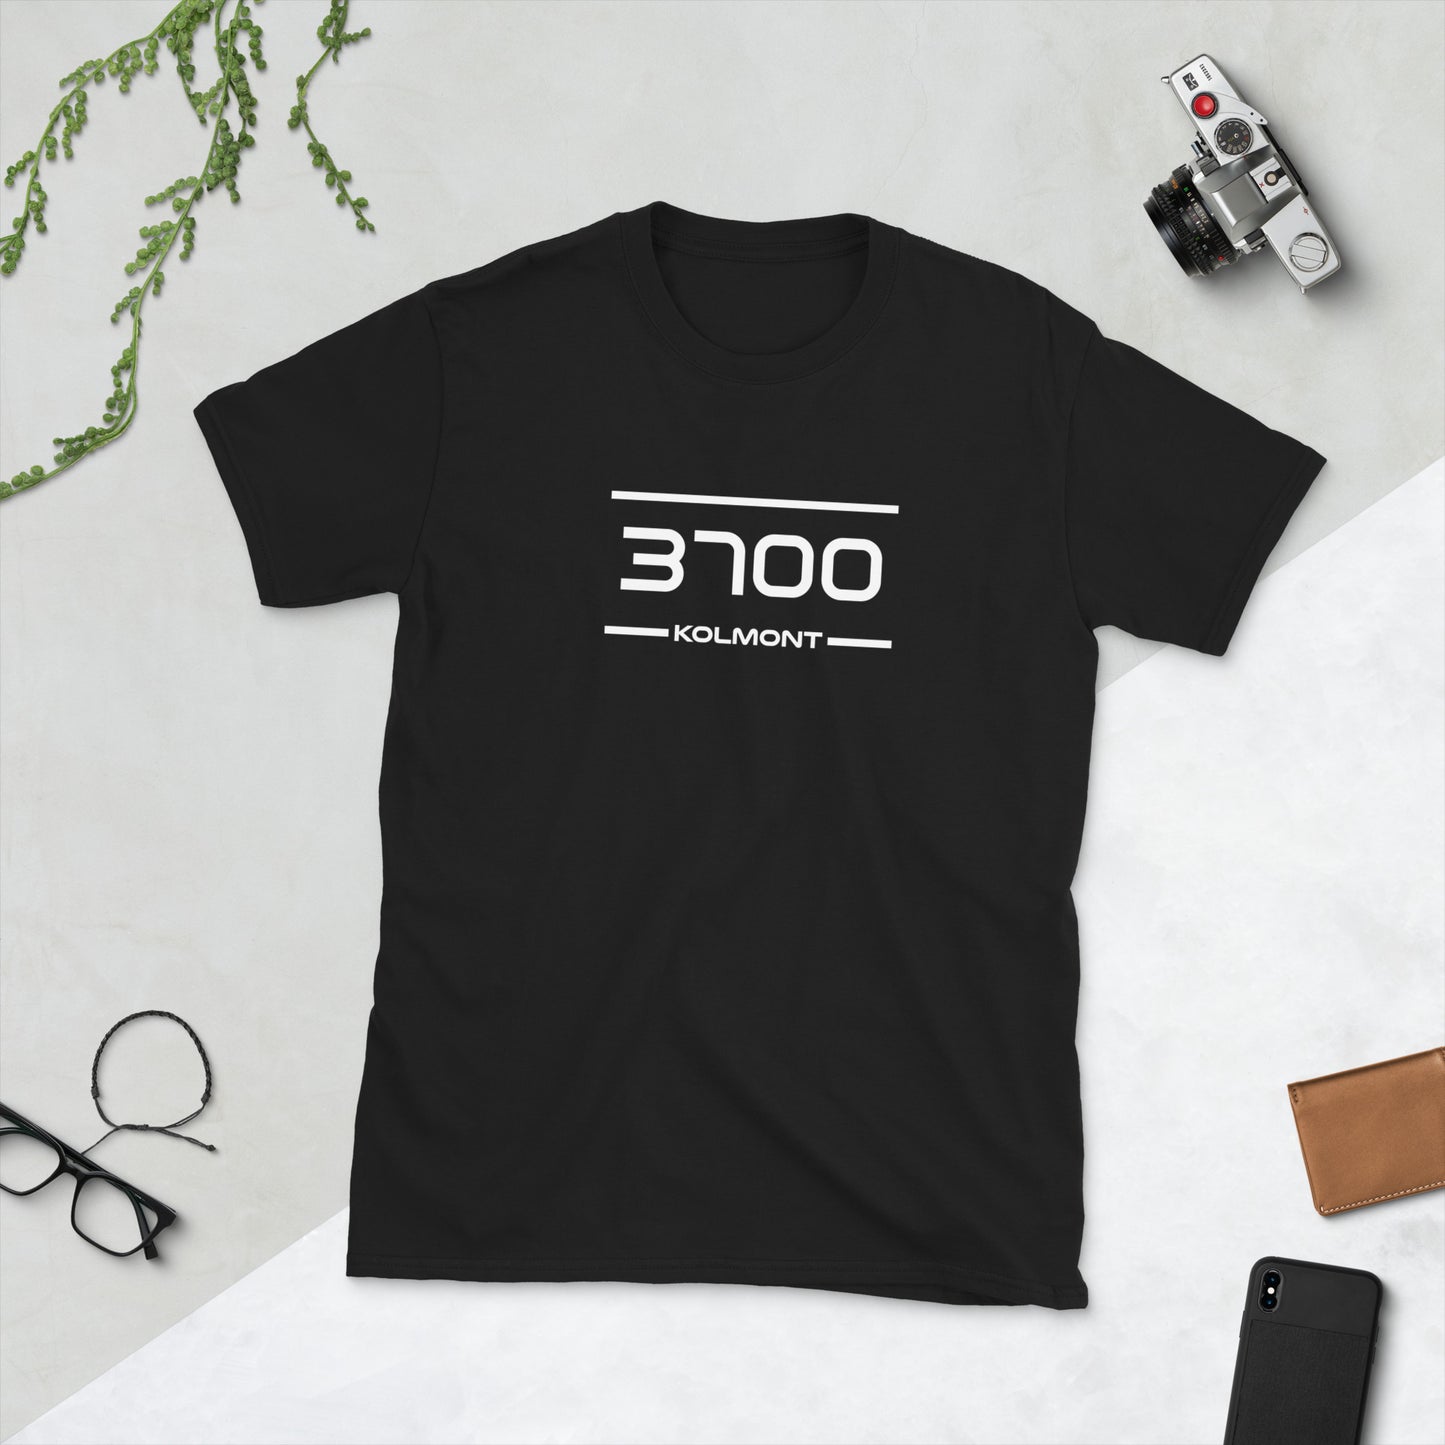 Tshirt - 3700 - Kolmont